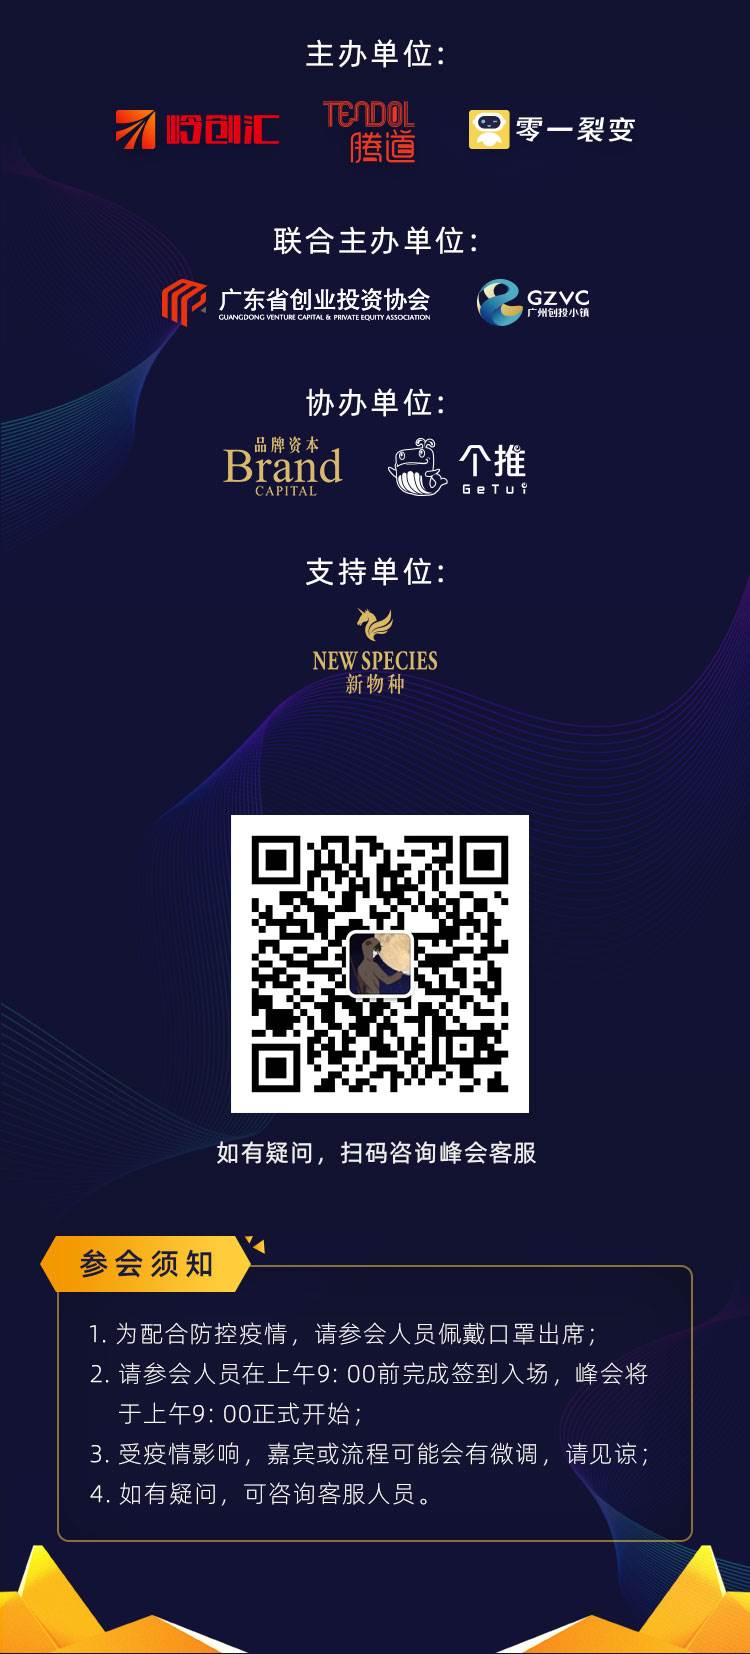 2020中国产业峰会_售票详情v2.1_12(腾道).jpg